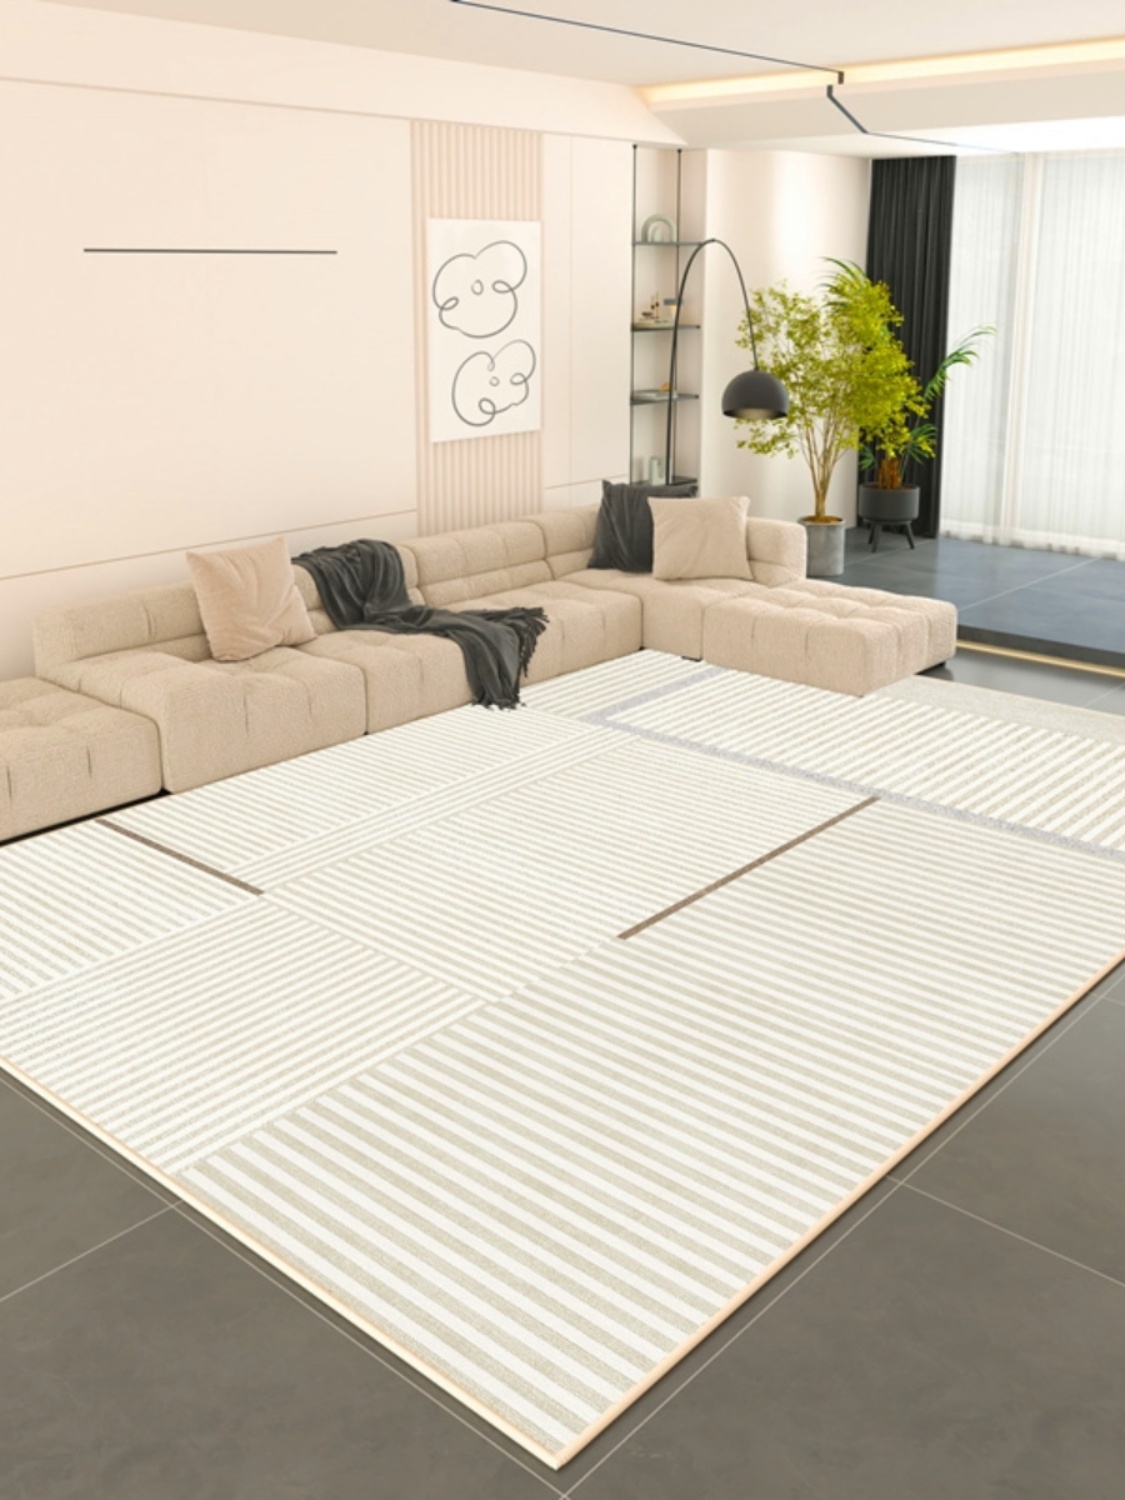 法式風格地毯輕奢高級床邊地毯大面積軟綿舒適地墊